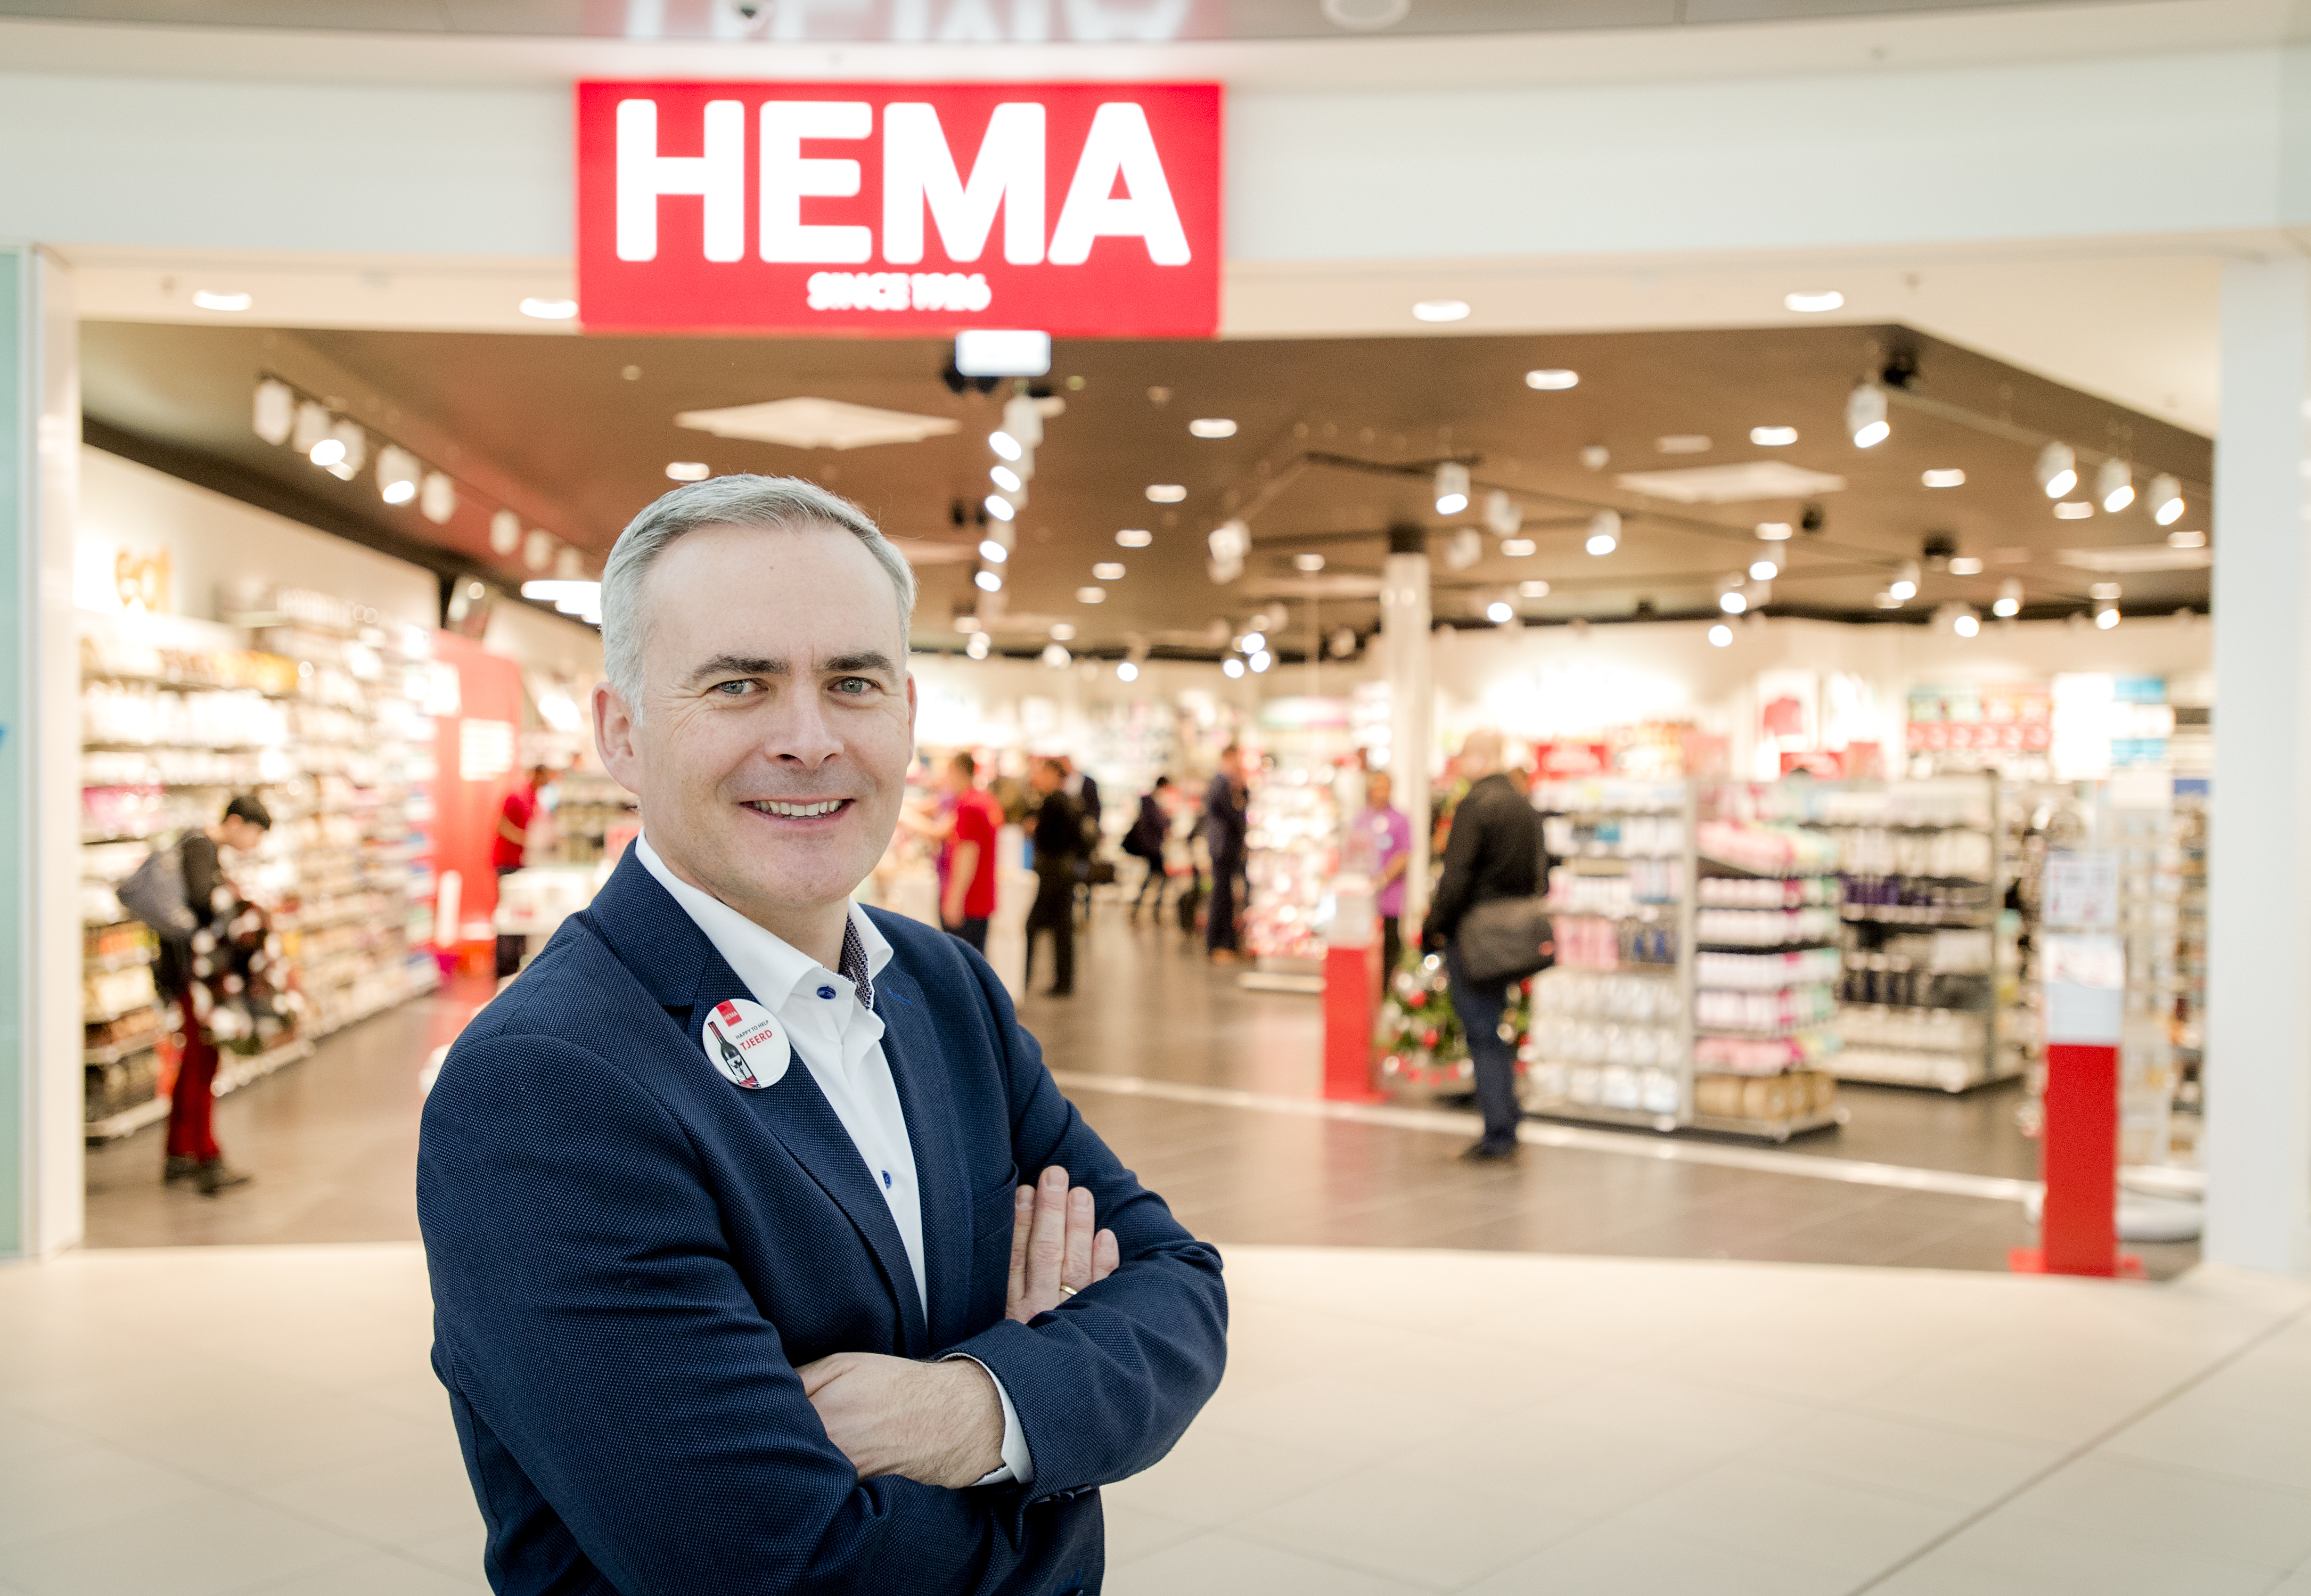 HEMA wil over tien jaar het merendeel van zijn omzet uit het buitenland halen. Volgens topman Tjeerd Jegen van de winkelketen is internationale expansie hét antwoord op de tegenwoordige problemen in de detailhandel.